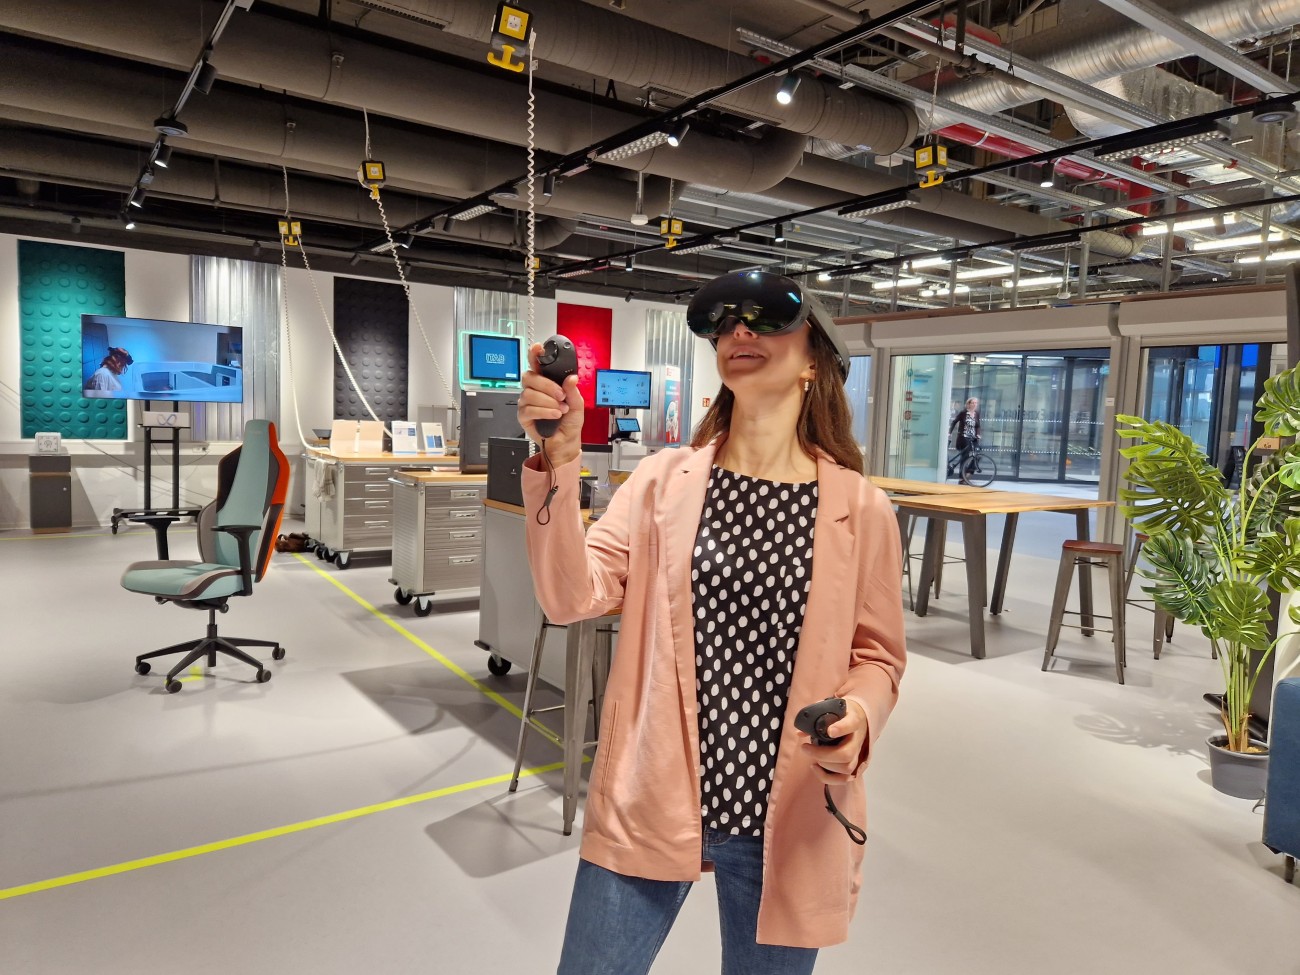 Eine Frau trägt eine Virtual Reality-Brille und benutzt zwei Controller, während sie sich dabei durch einen Raum bewegt.